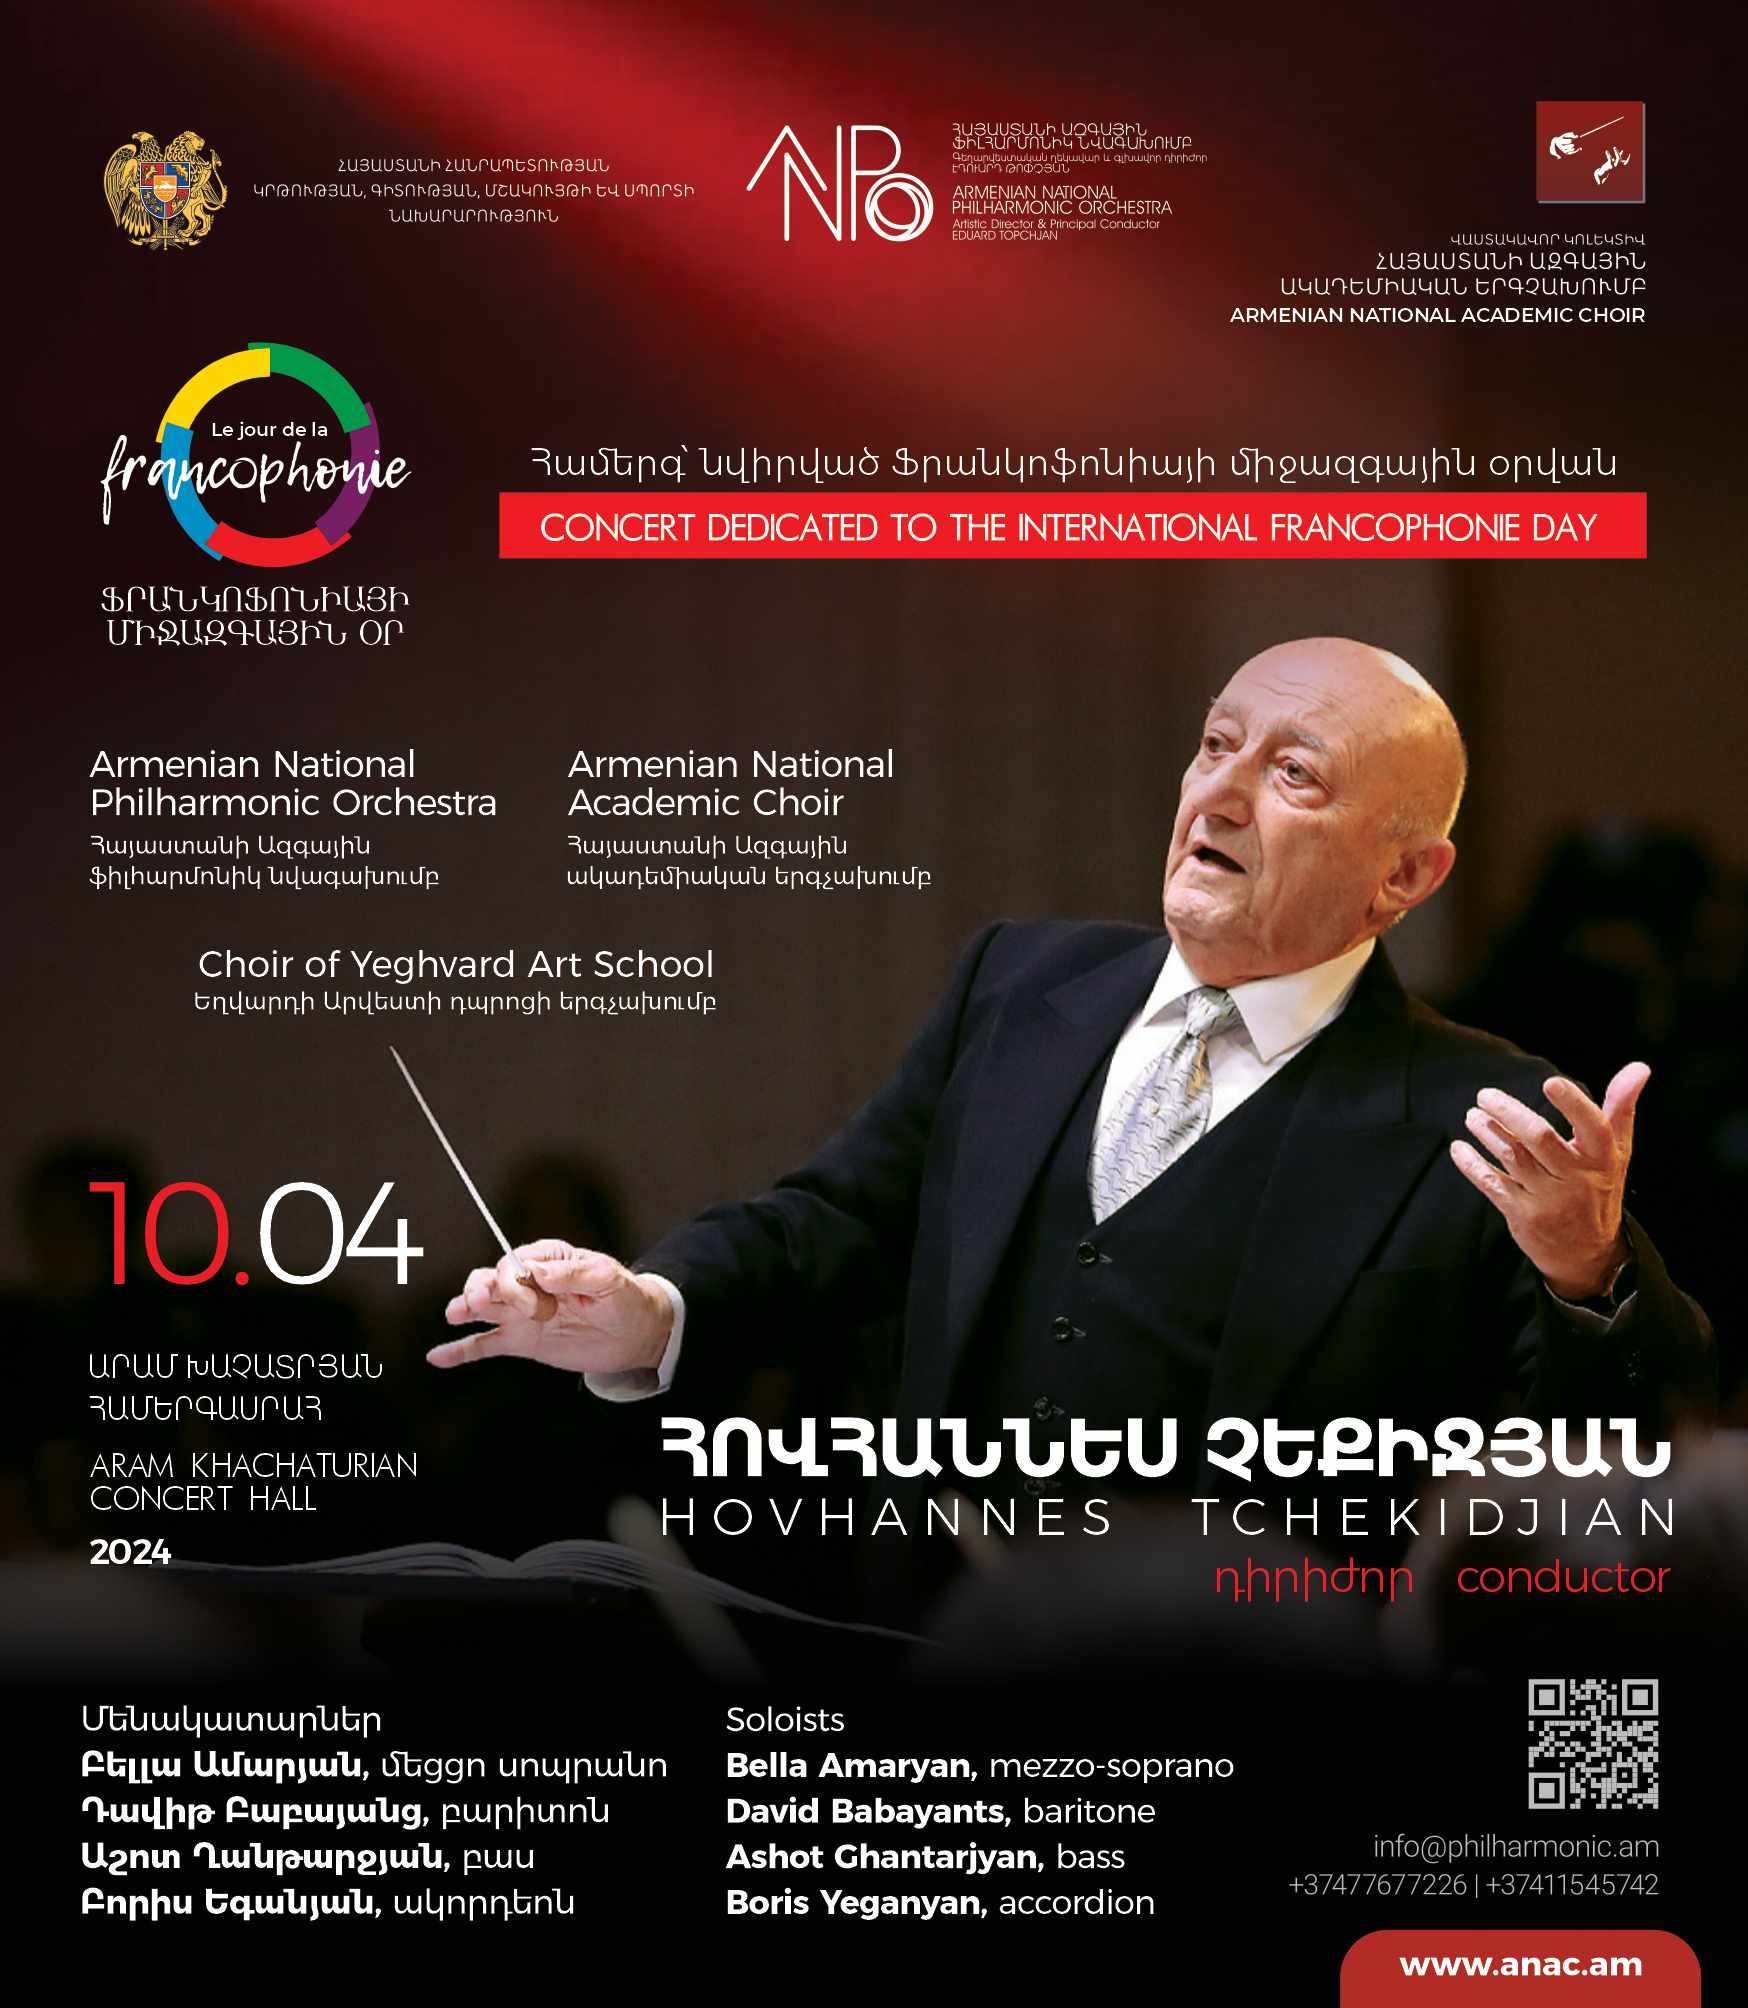 Երևանում տեղի կունենա Ֆրանկոֆոնիայի միջազգային օրվան նվիրված համերգ